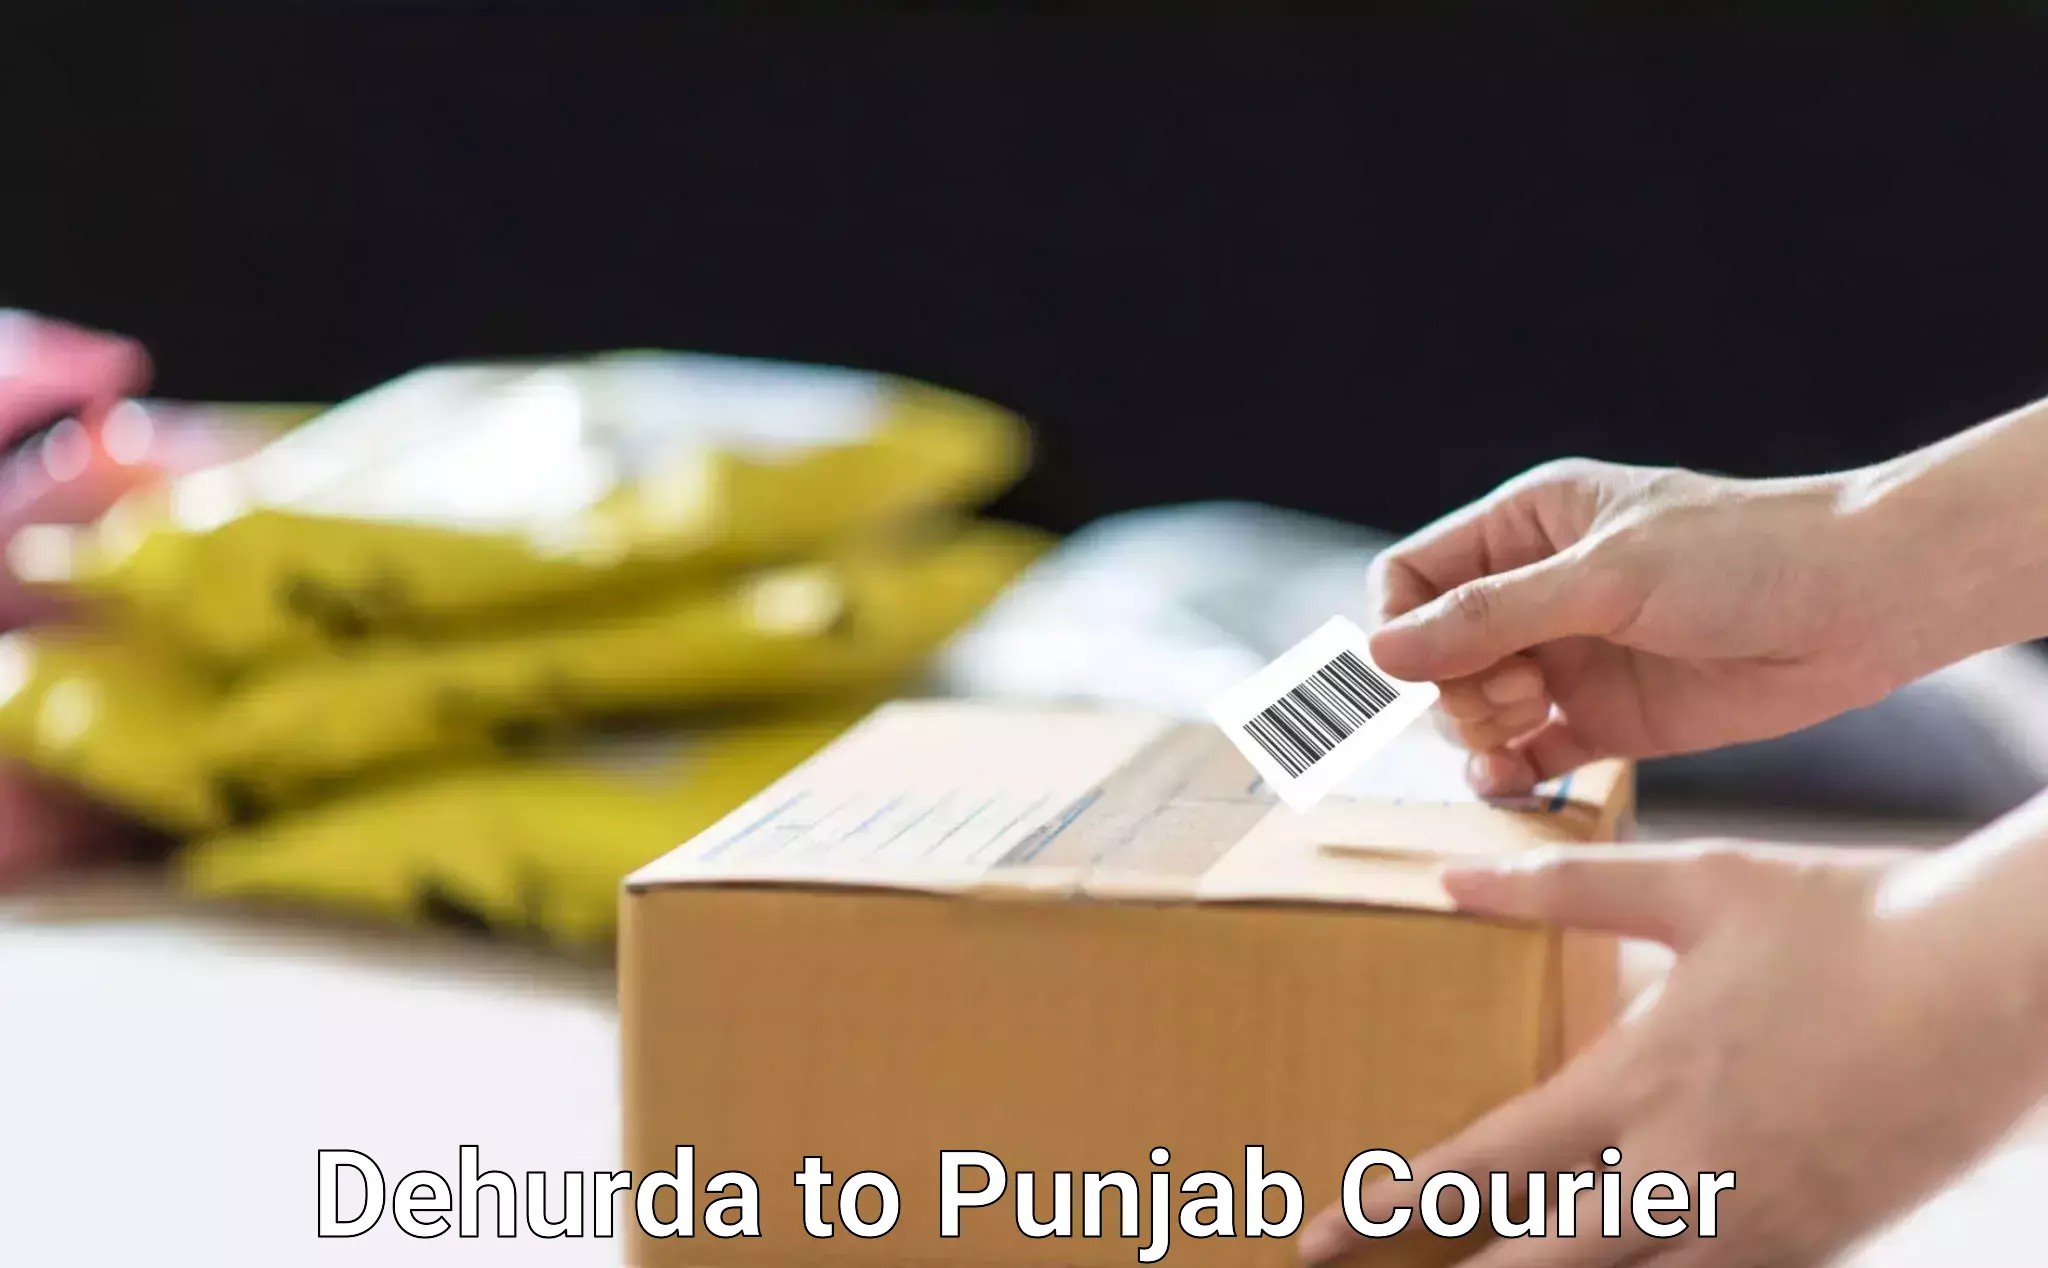 Reliable courier service Dehurda to Jalalabad